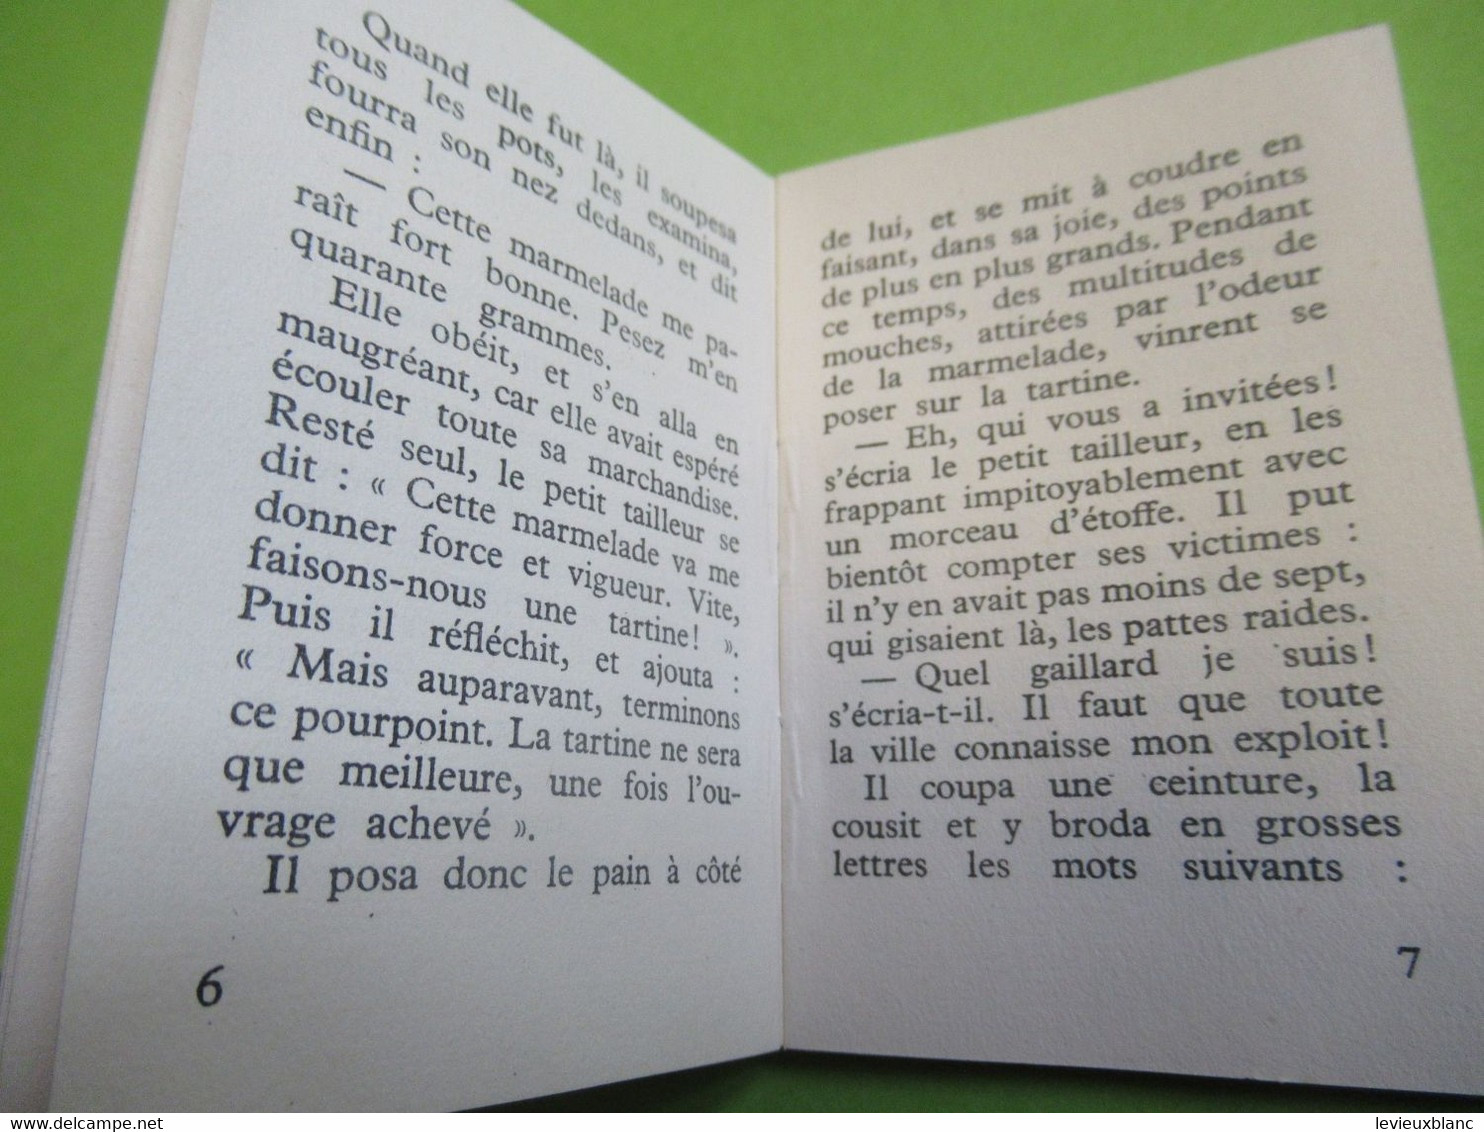 Livret De 24 Pages / LE VAILLANT PETIT TAILLEUR / Conte De GRIMM/ Presses De La Cité/1954           BD169 - Autres & Non Classés